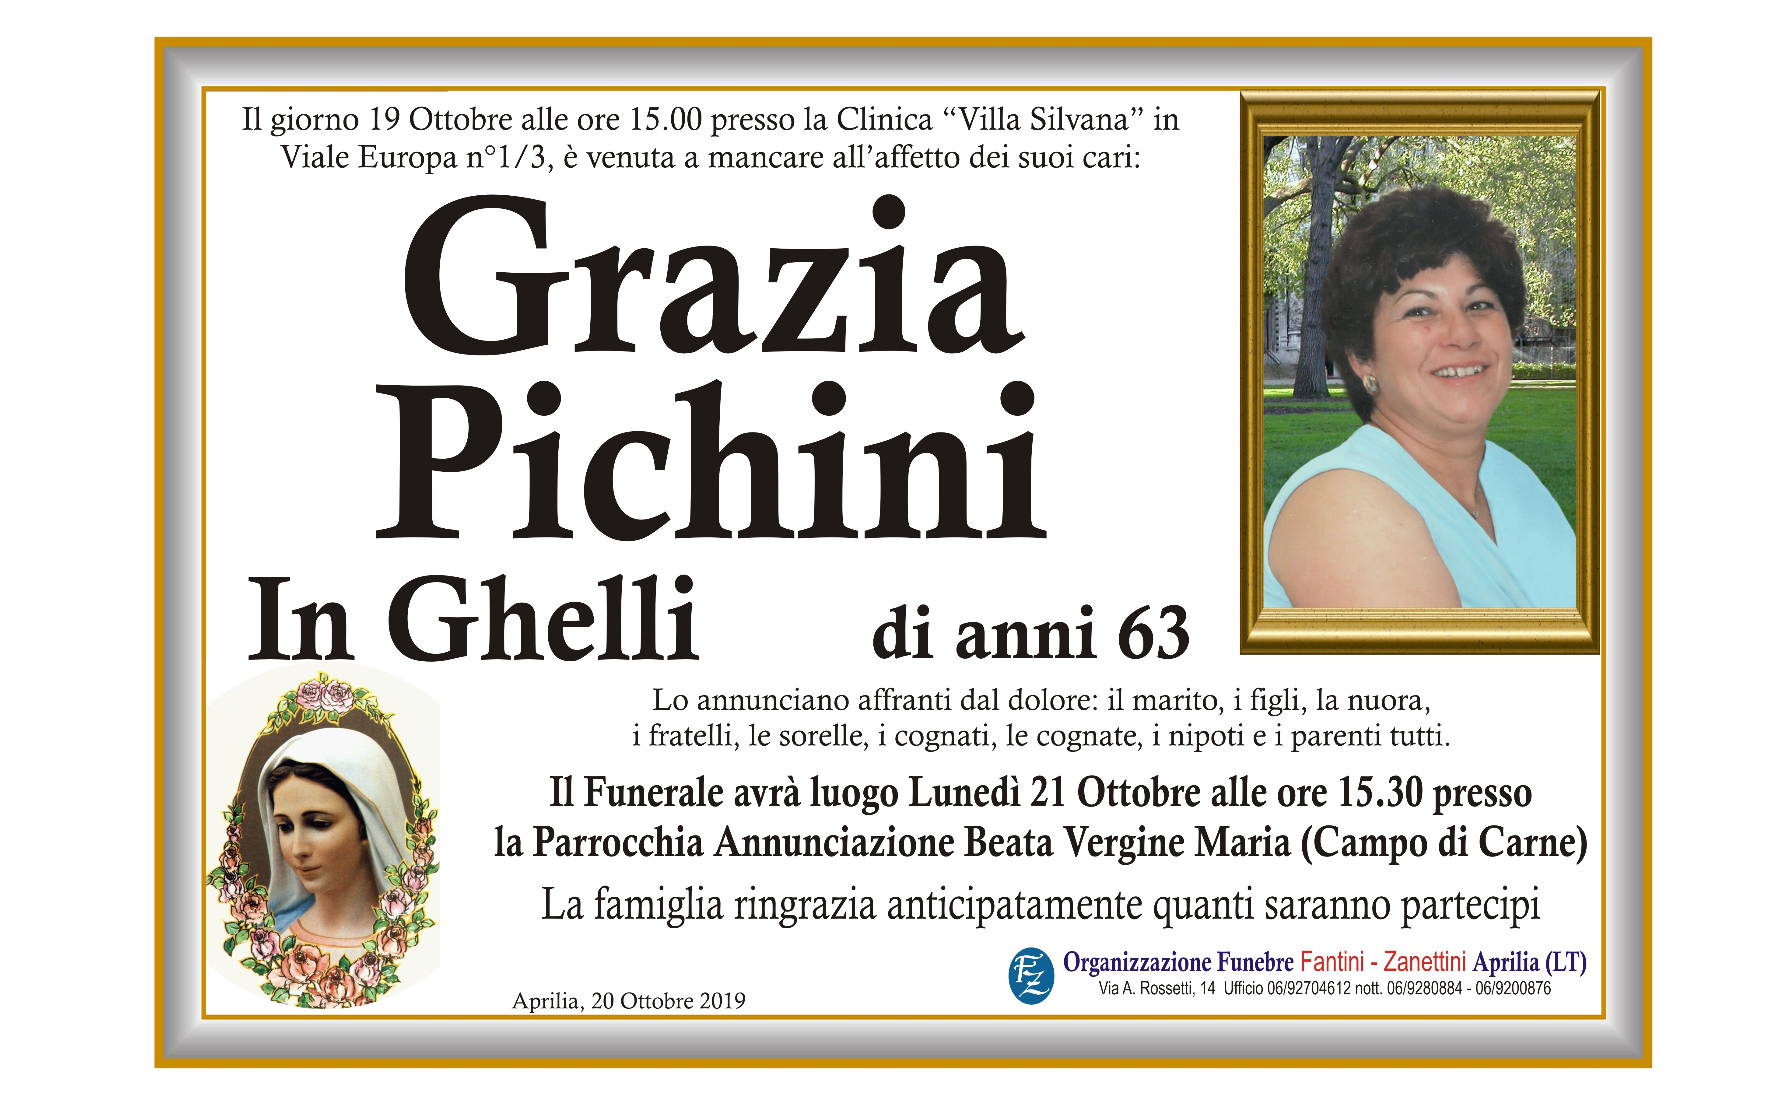 Grazia Pichini